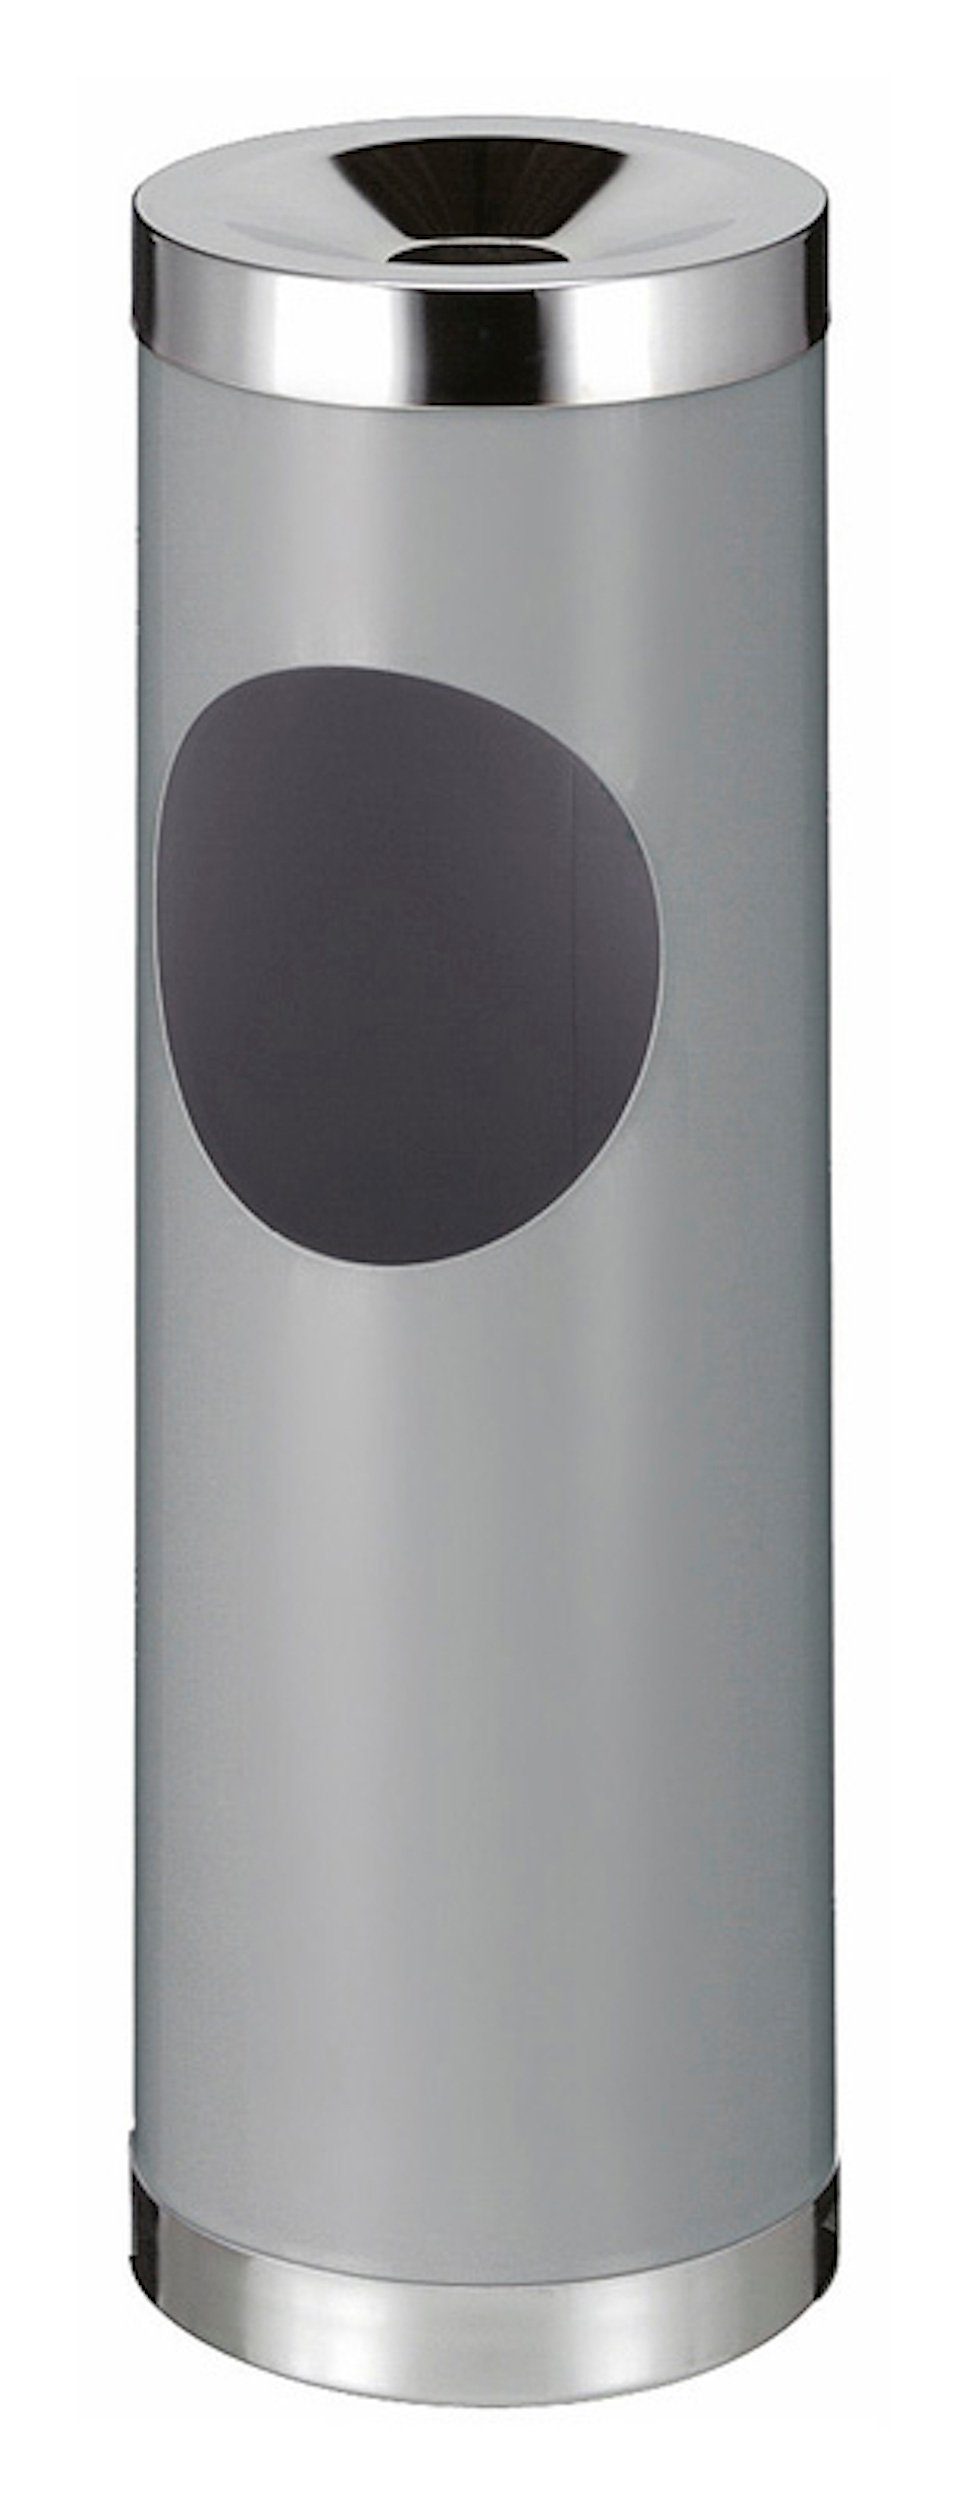 Runder Aschenbecher PROREGAL® Kombiascher Metall Grau 30L, Einwurfsöffnung, mit ovaler